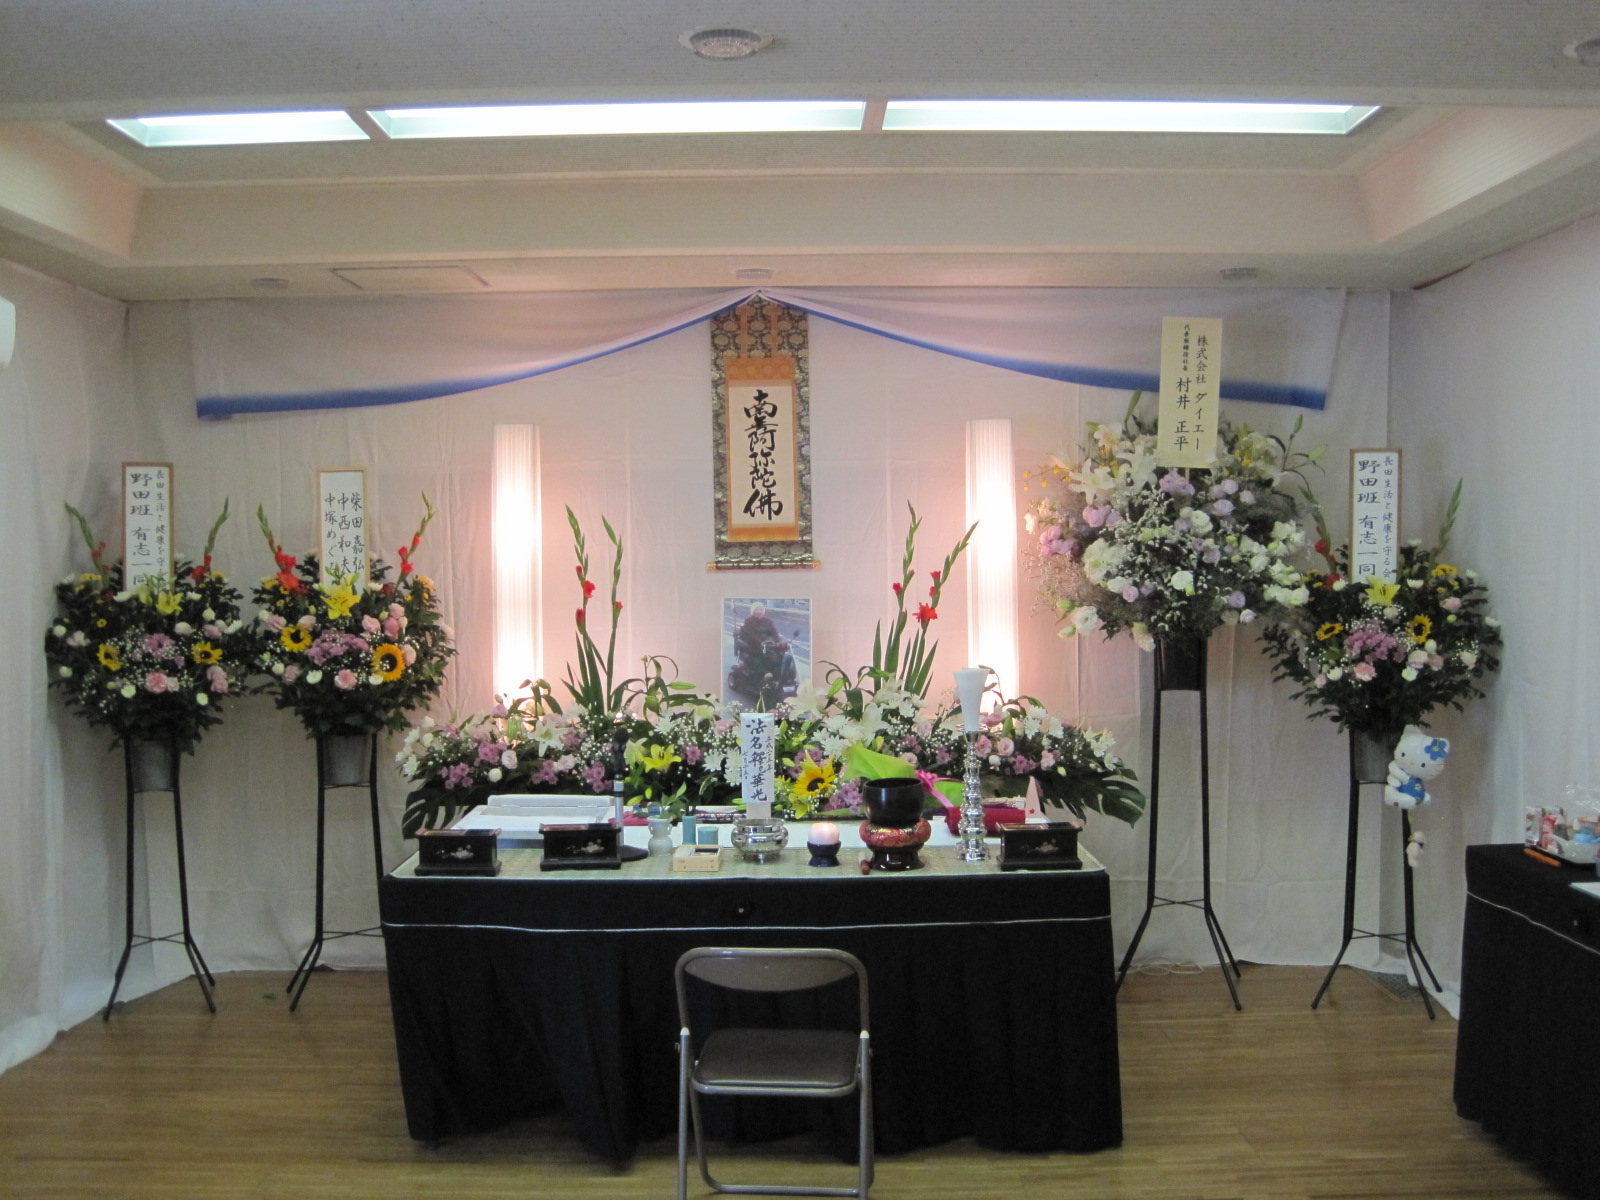 二葉典礼有限会社 兵庫県神戸市長田区 の葬式 葬儀 葬儀会社 家族葬 安心できる葬儀ガイド